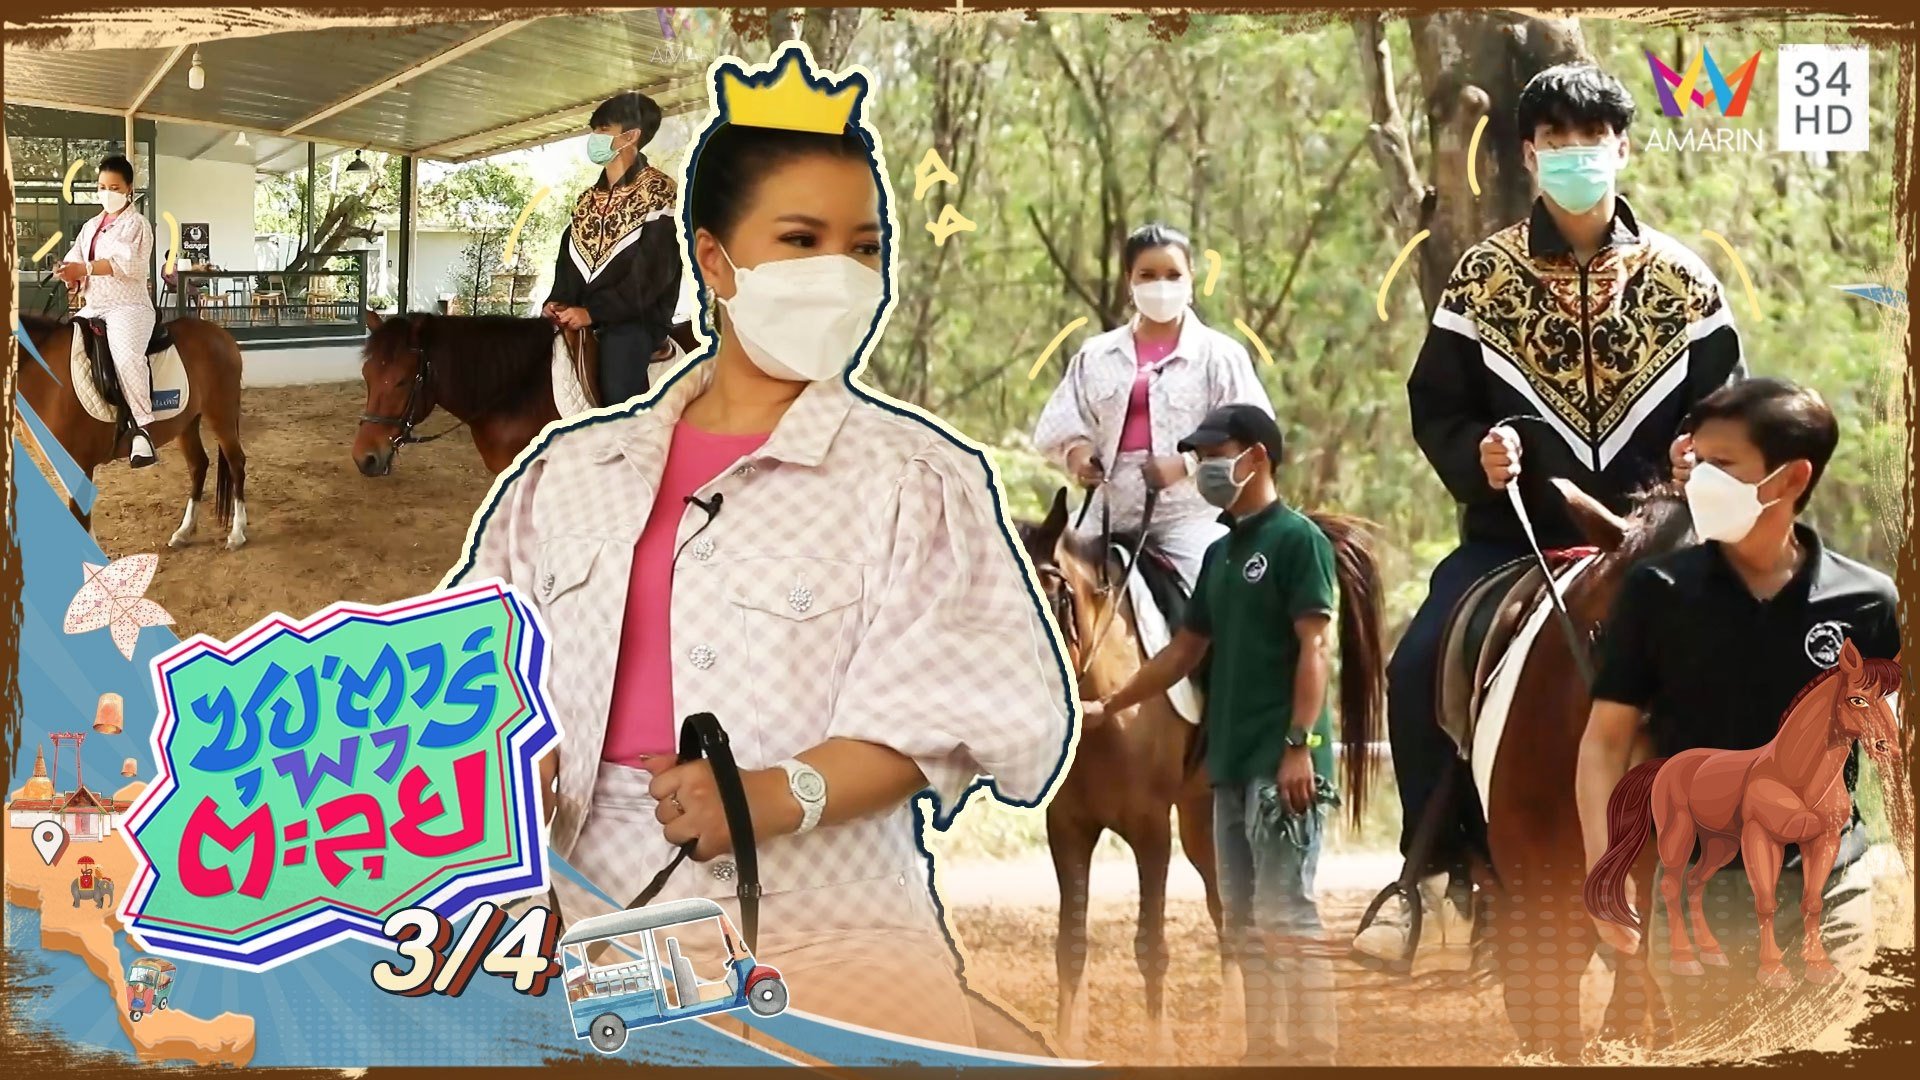 "จิตดี" สลัดคราบผู้ประกาศข่าวสาวหวาน มาเรียนขี่ม้าครั้งแรก | ซุปตาร์พาตะลุย | 17 ก.พ. 65 (3/4) | AMARIN TVHD34